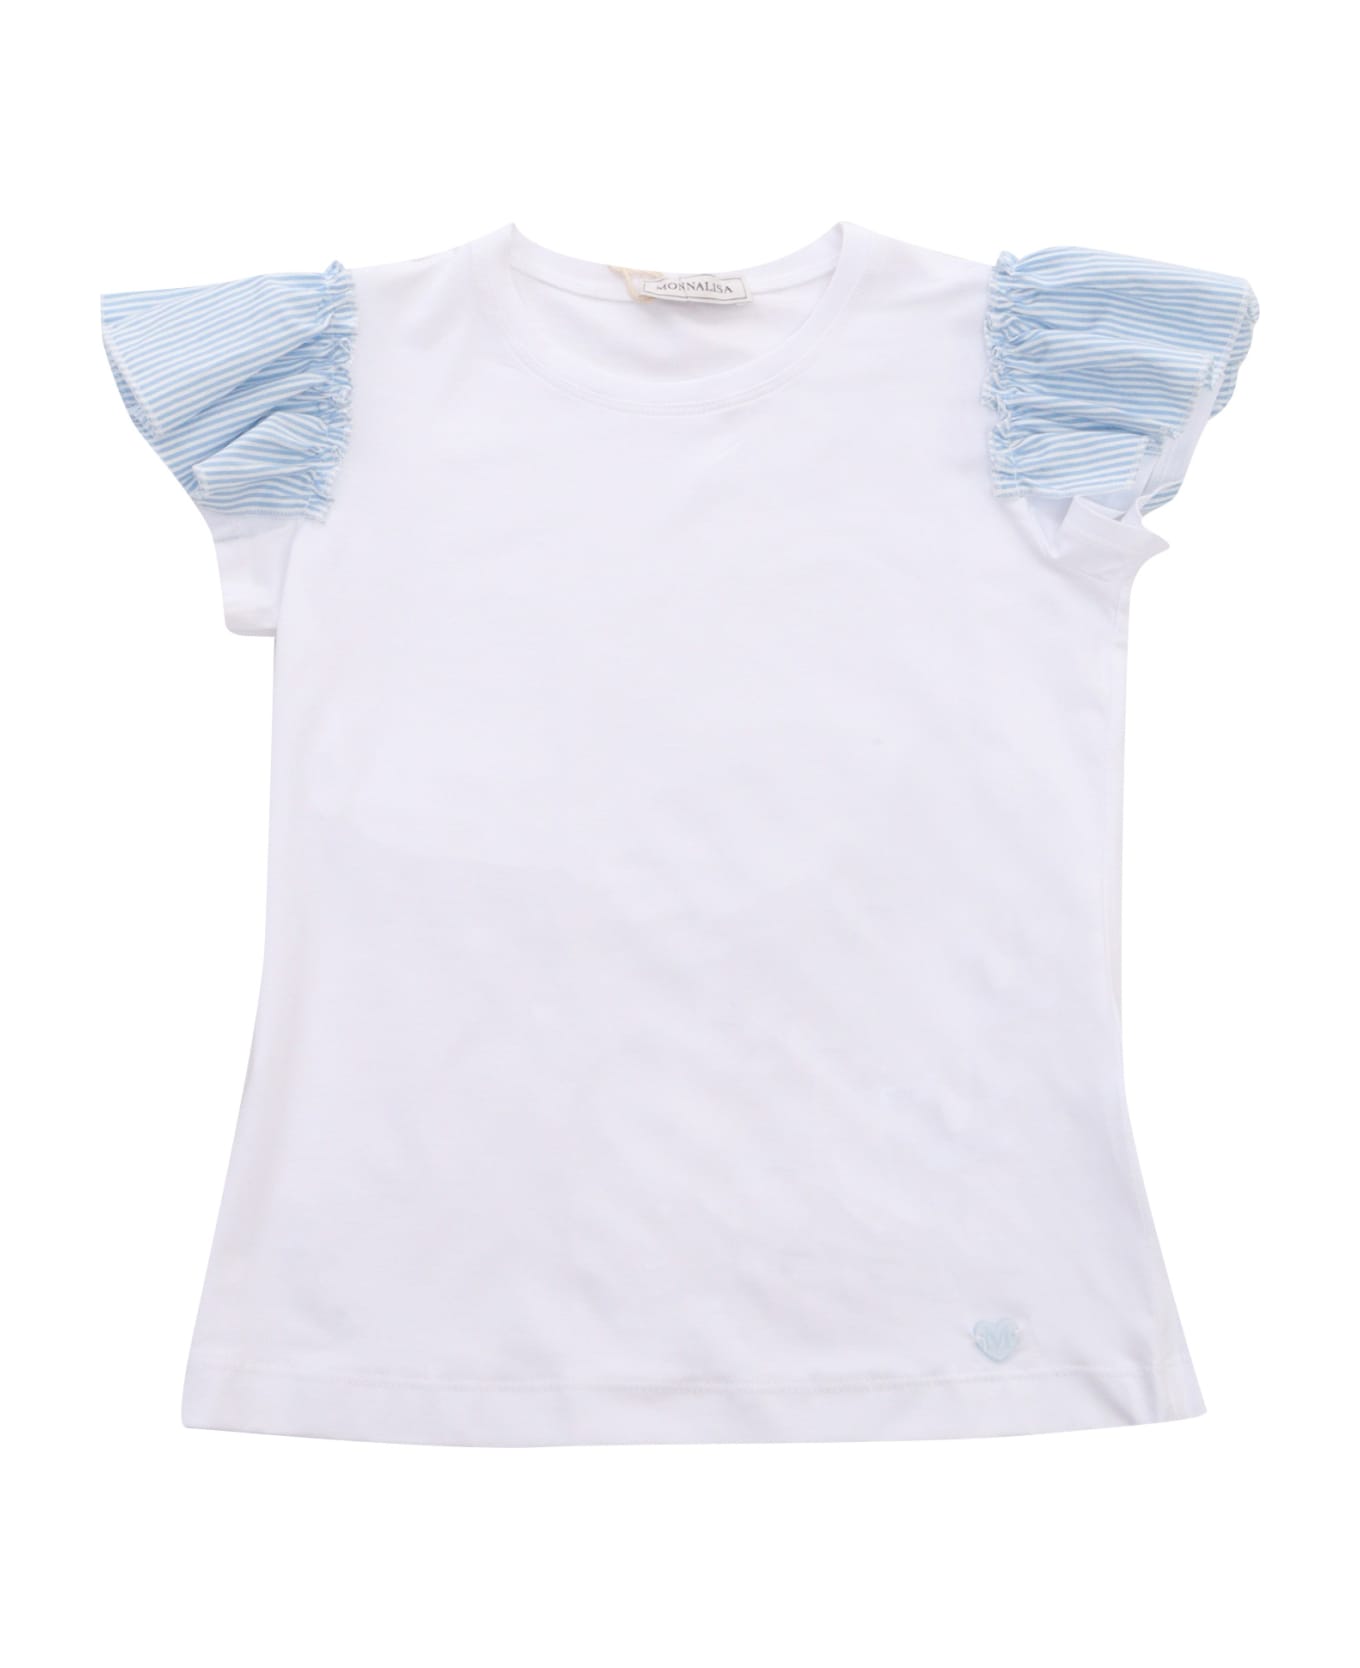 Monnalisa White T-shirt - WHITE